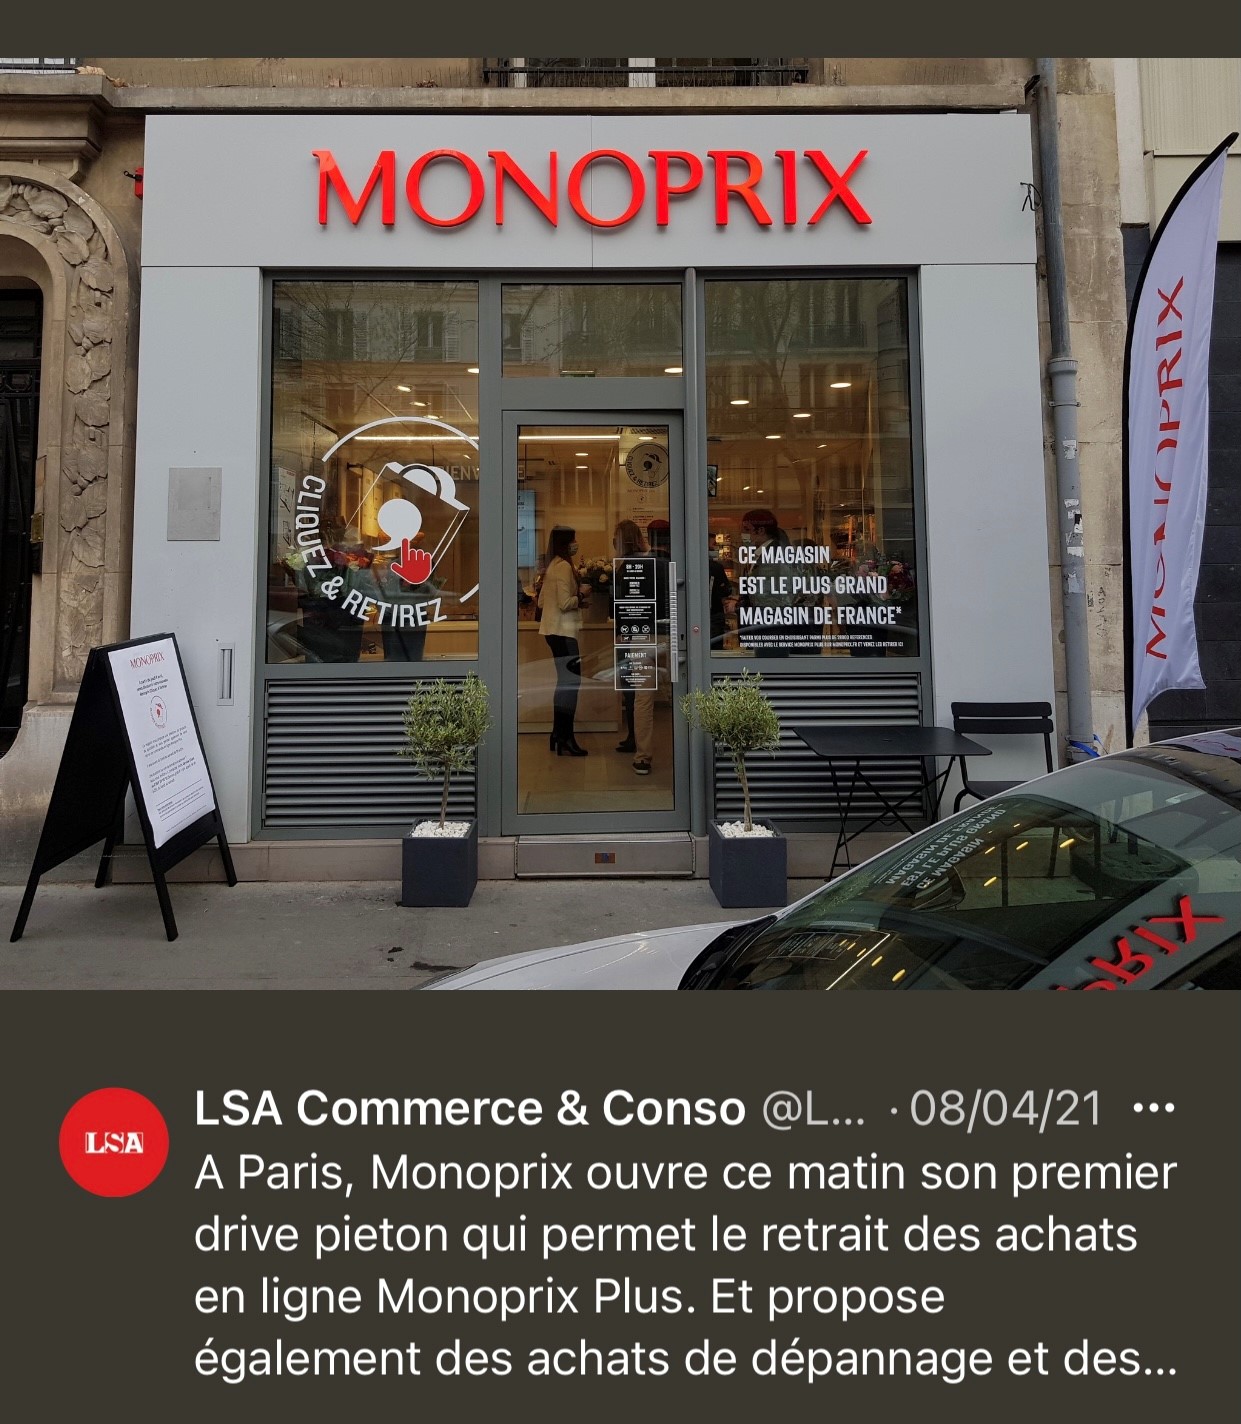 Monoprix plus grand magasin du monde LSA aprile 2021 